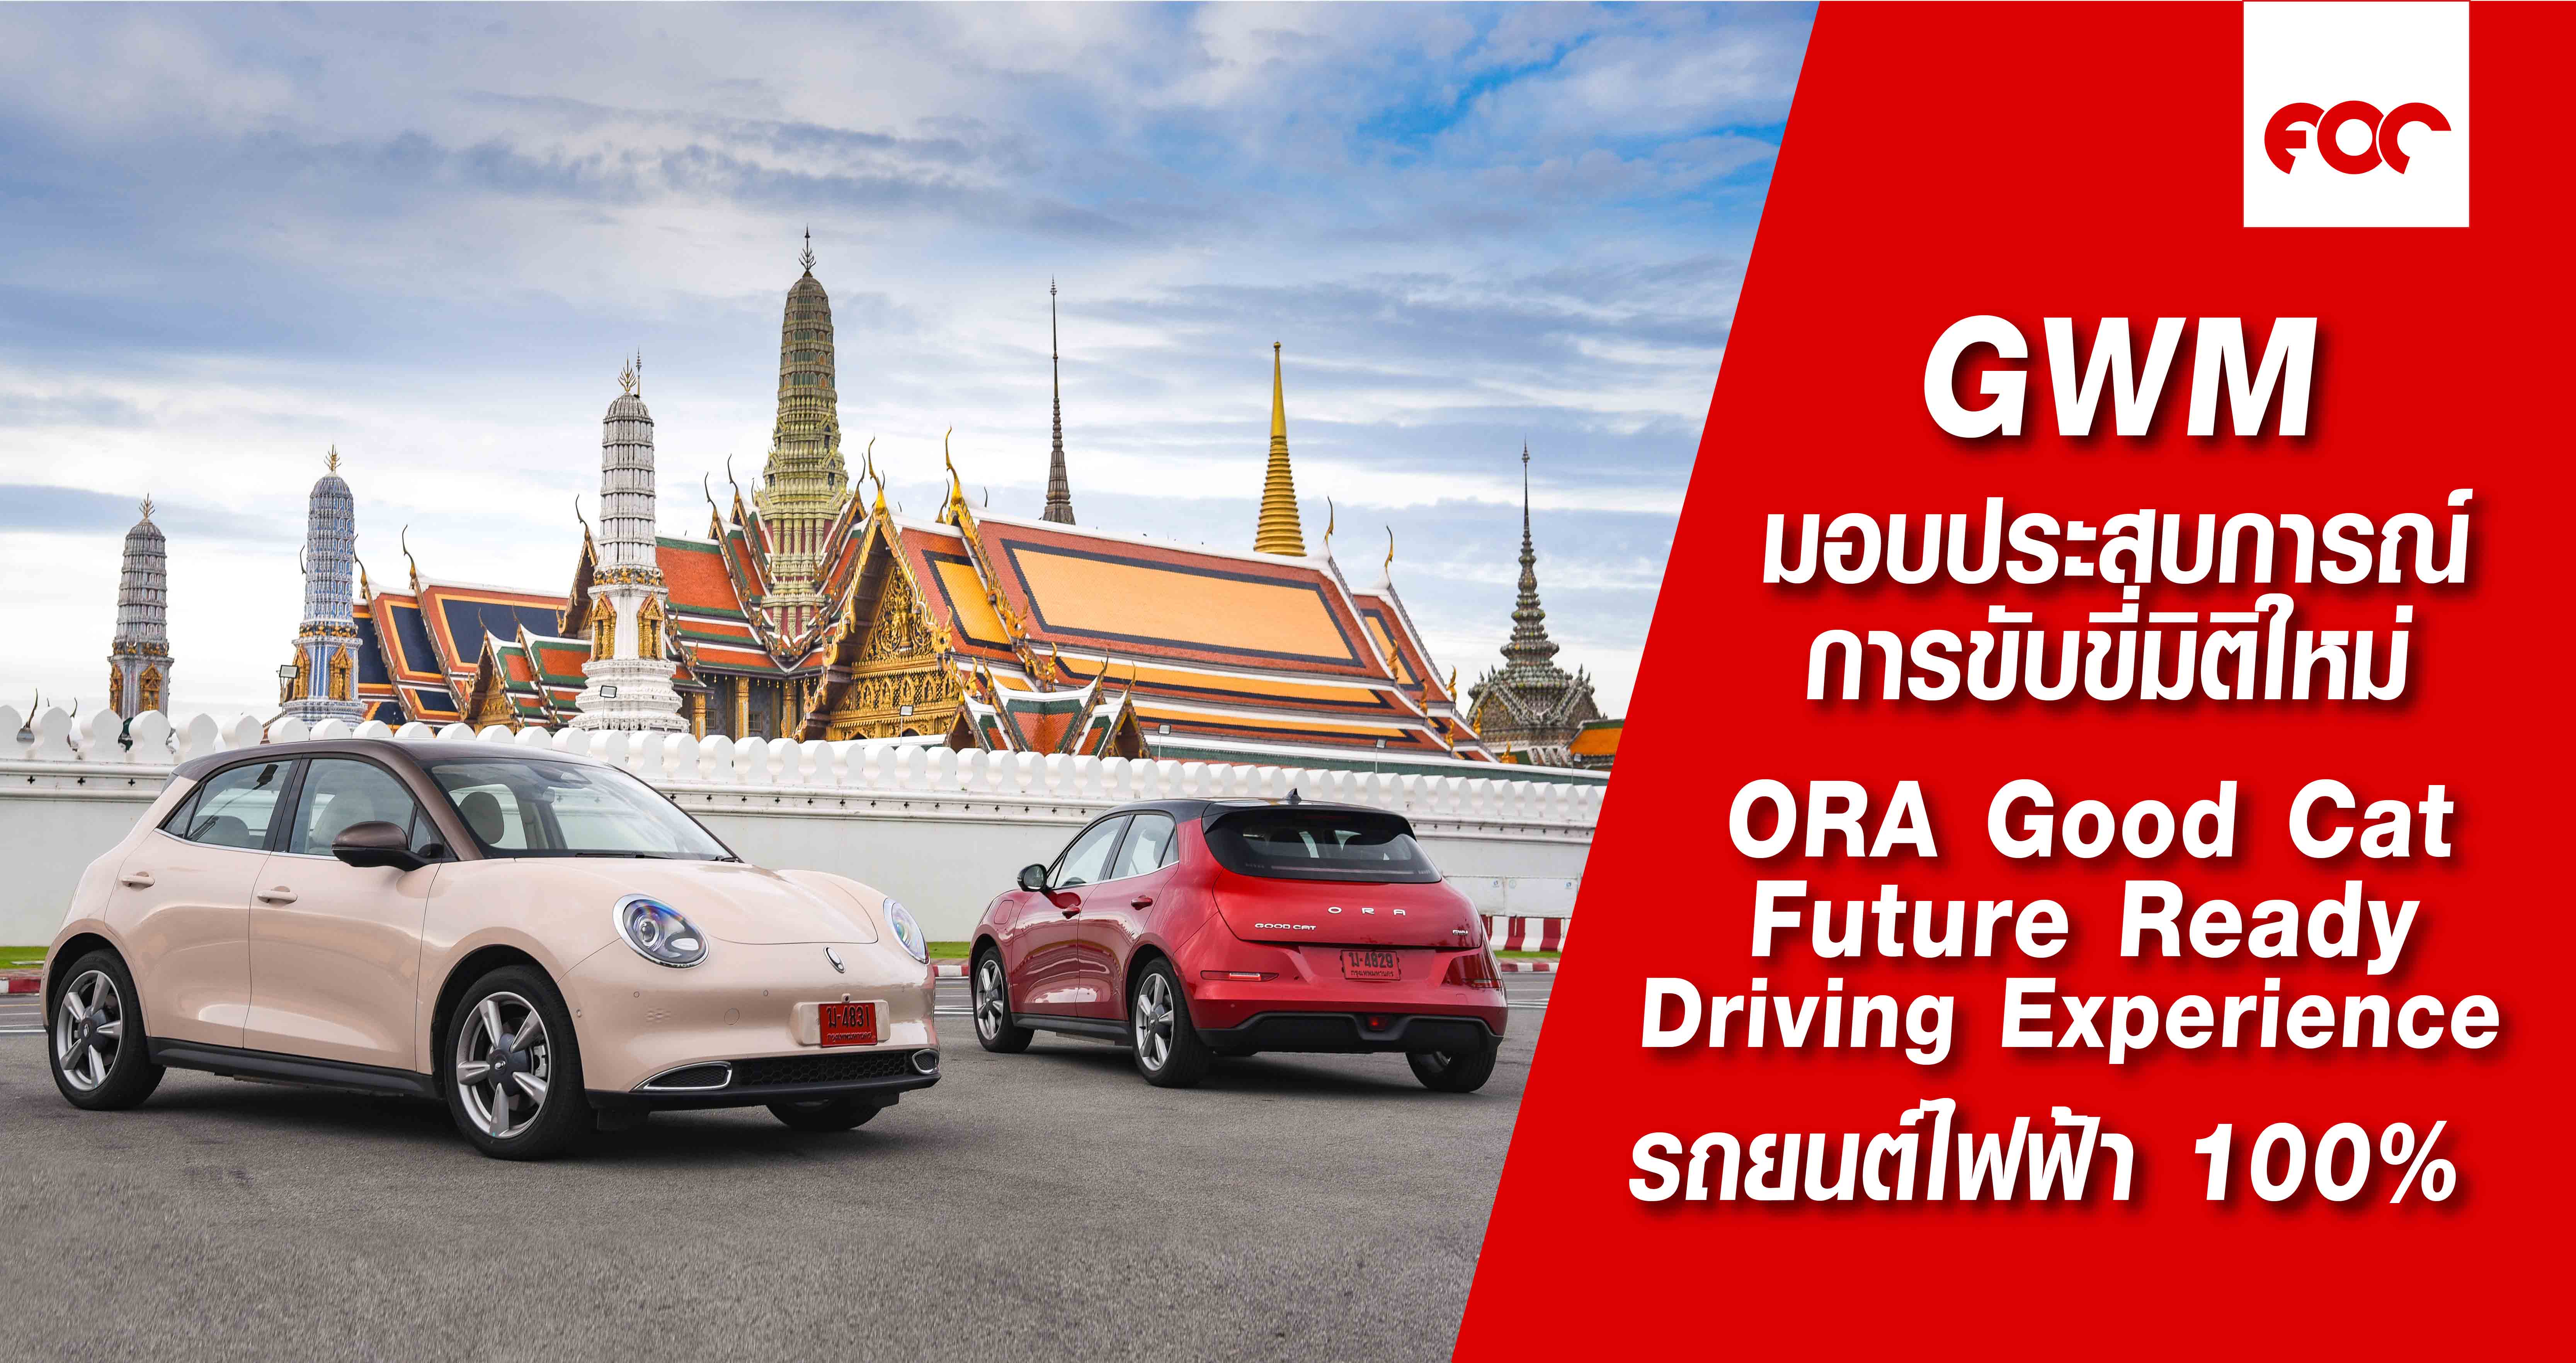 เกรท วอลล์ มอเตอร์ นำคณะสื่อมวลชนสัมผัสประสบการณ์การขับขี่มิติใหม่กับ “ORA Good Cat Future Ready Driving Experience” ร่วมทดลองขับและทดสอบสมรรถนะ ORA Good Cat รถยนต์ไฟฟ้า 100%  ก่อนเปิดตัวในประเทศไทย พร้อมประกาศราคาอย่างเป็นทางการ 29 ตุลาคมนี้